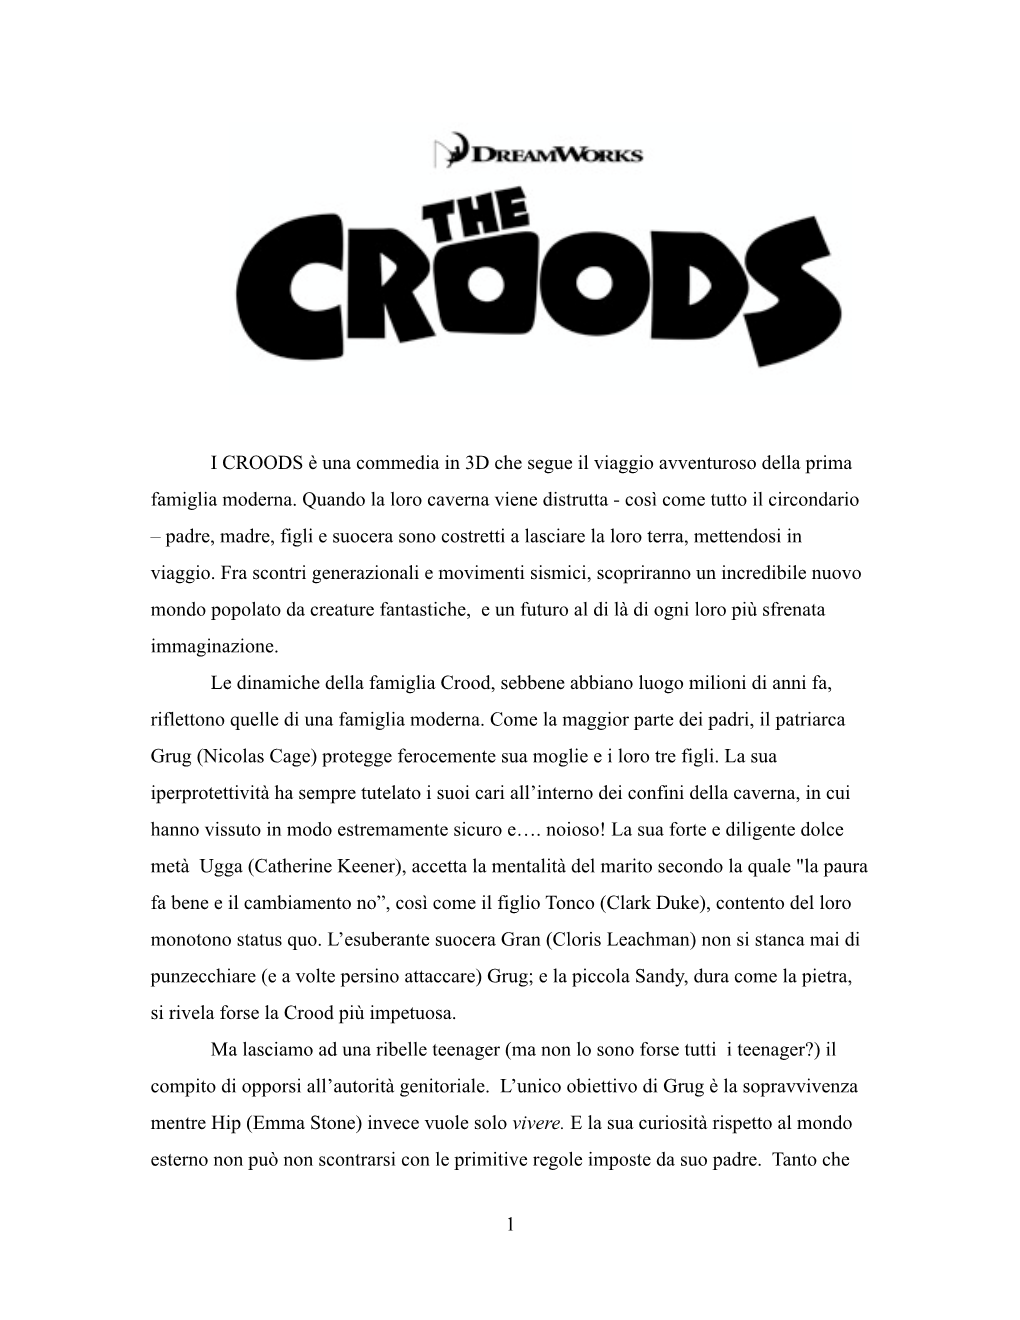 I CROODS Press Book